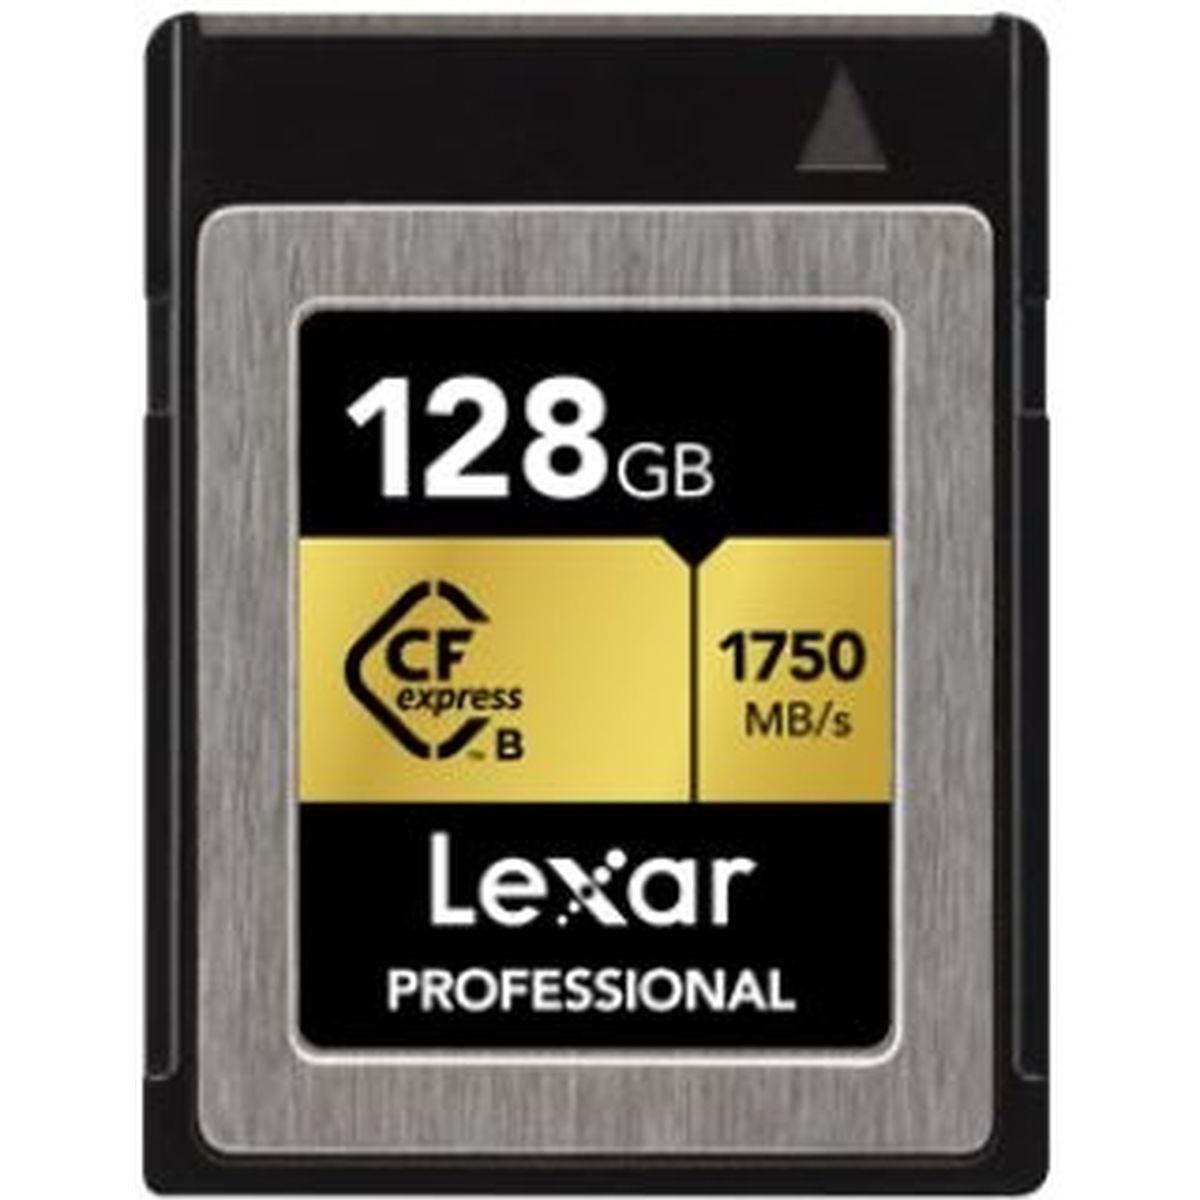 Lexar CFexpress Professional 1750MB/s 128GB 